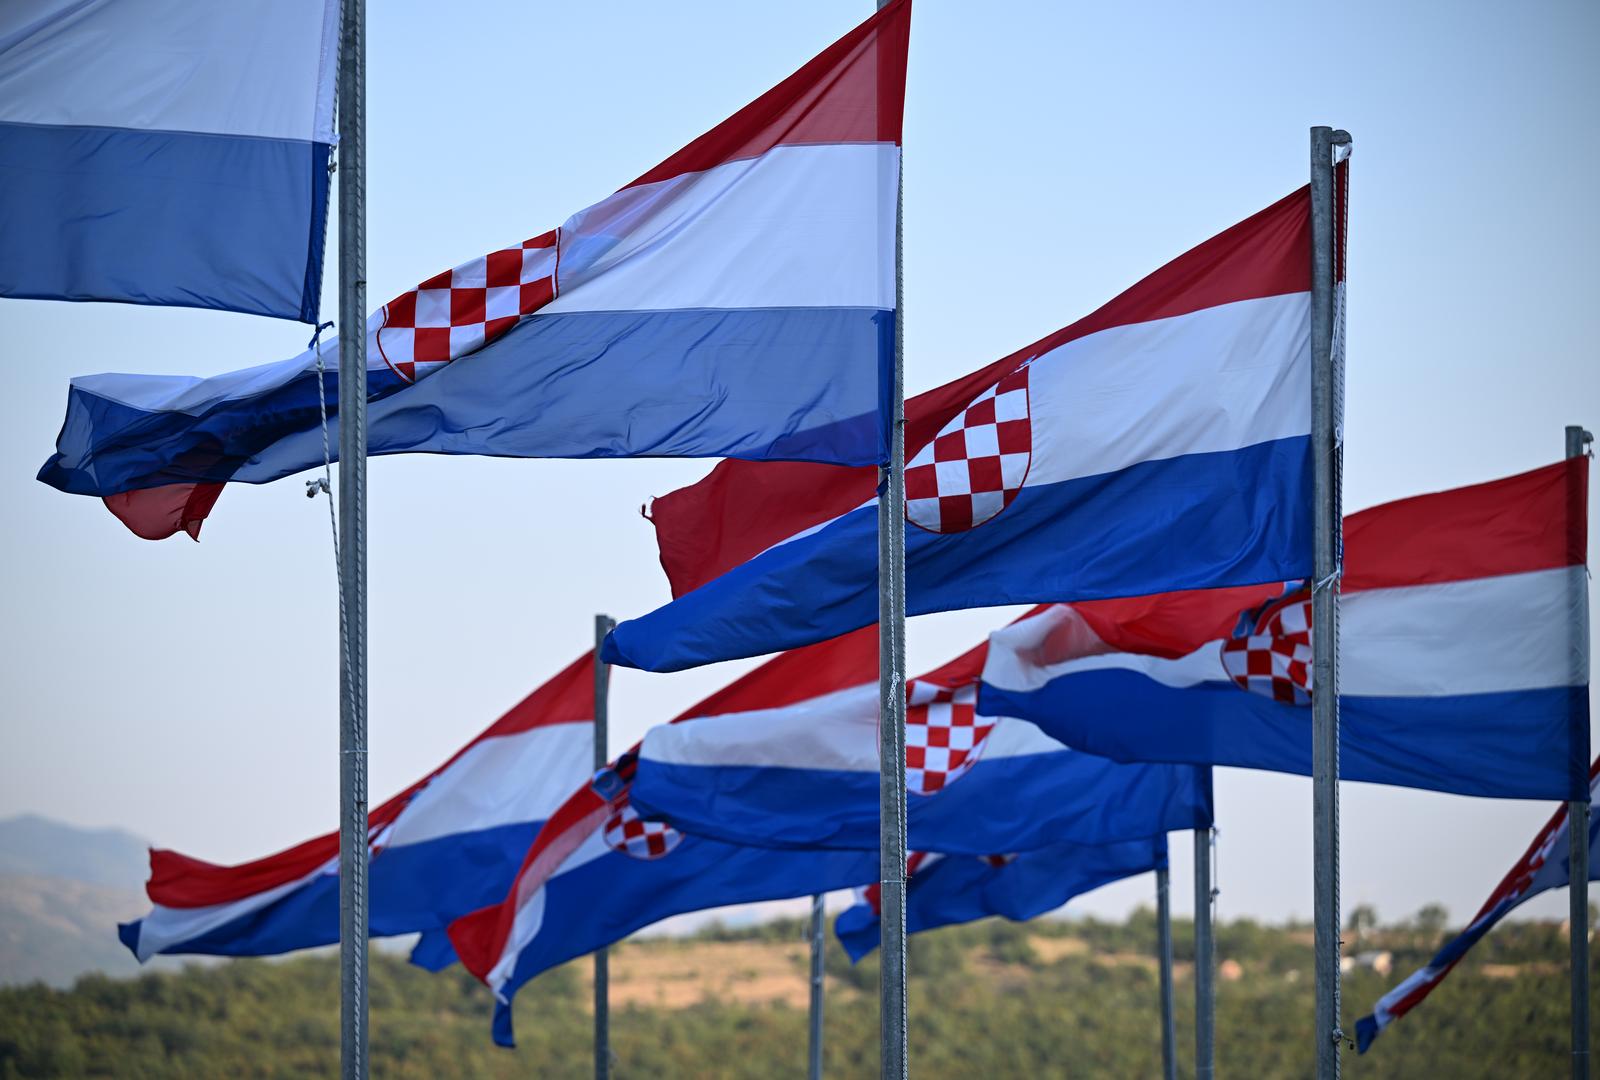 04.08.2022., Knin - Zastave u Kninu dan uoci 27. obljetnice VRO Oluja.  Photo: Davor Puklavec/PIXSELL